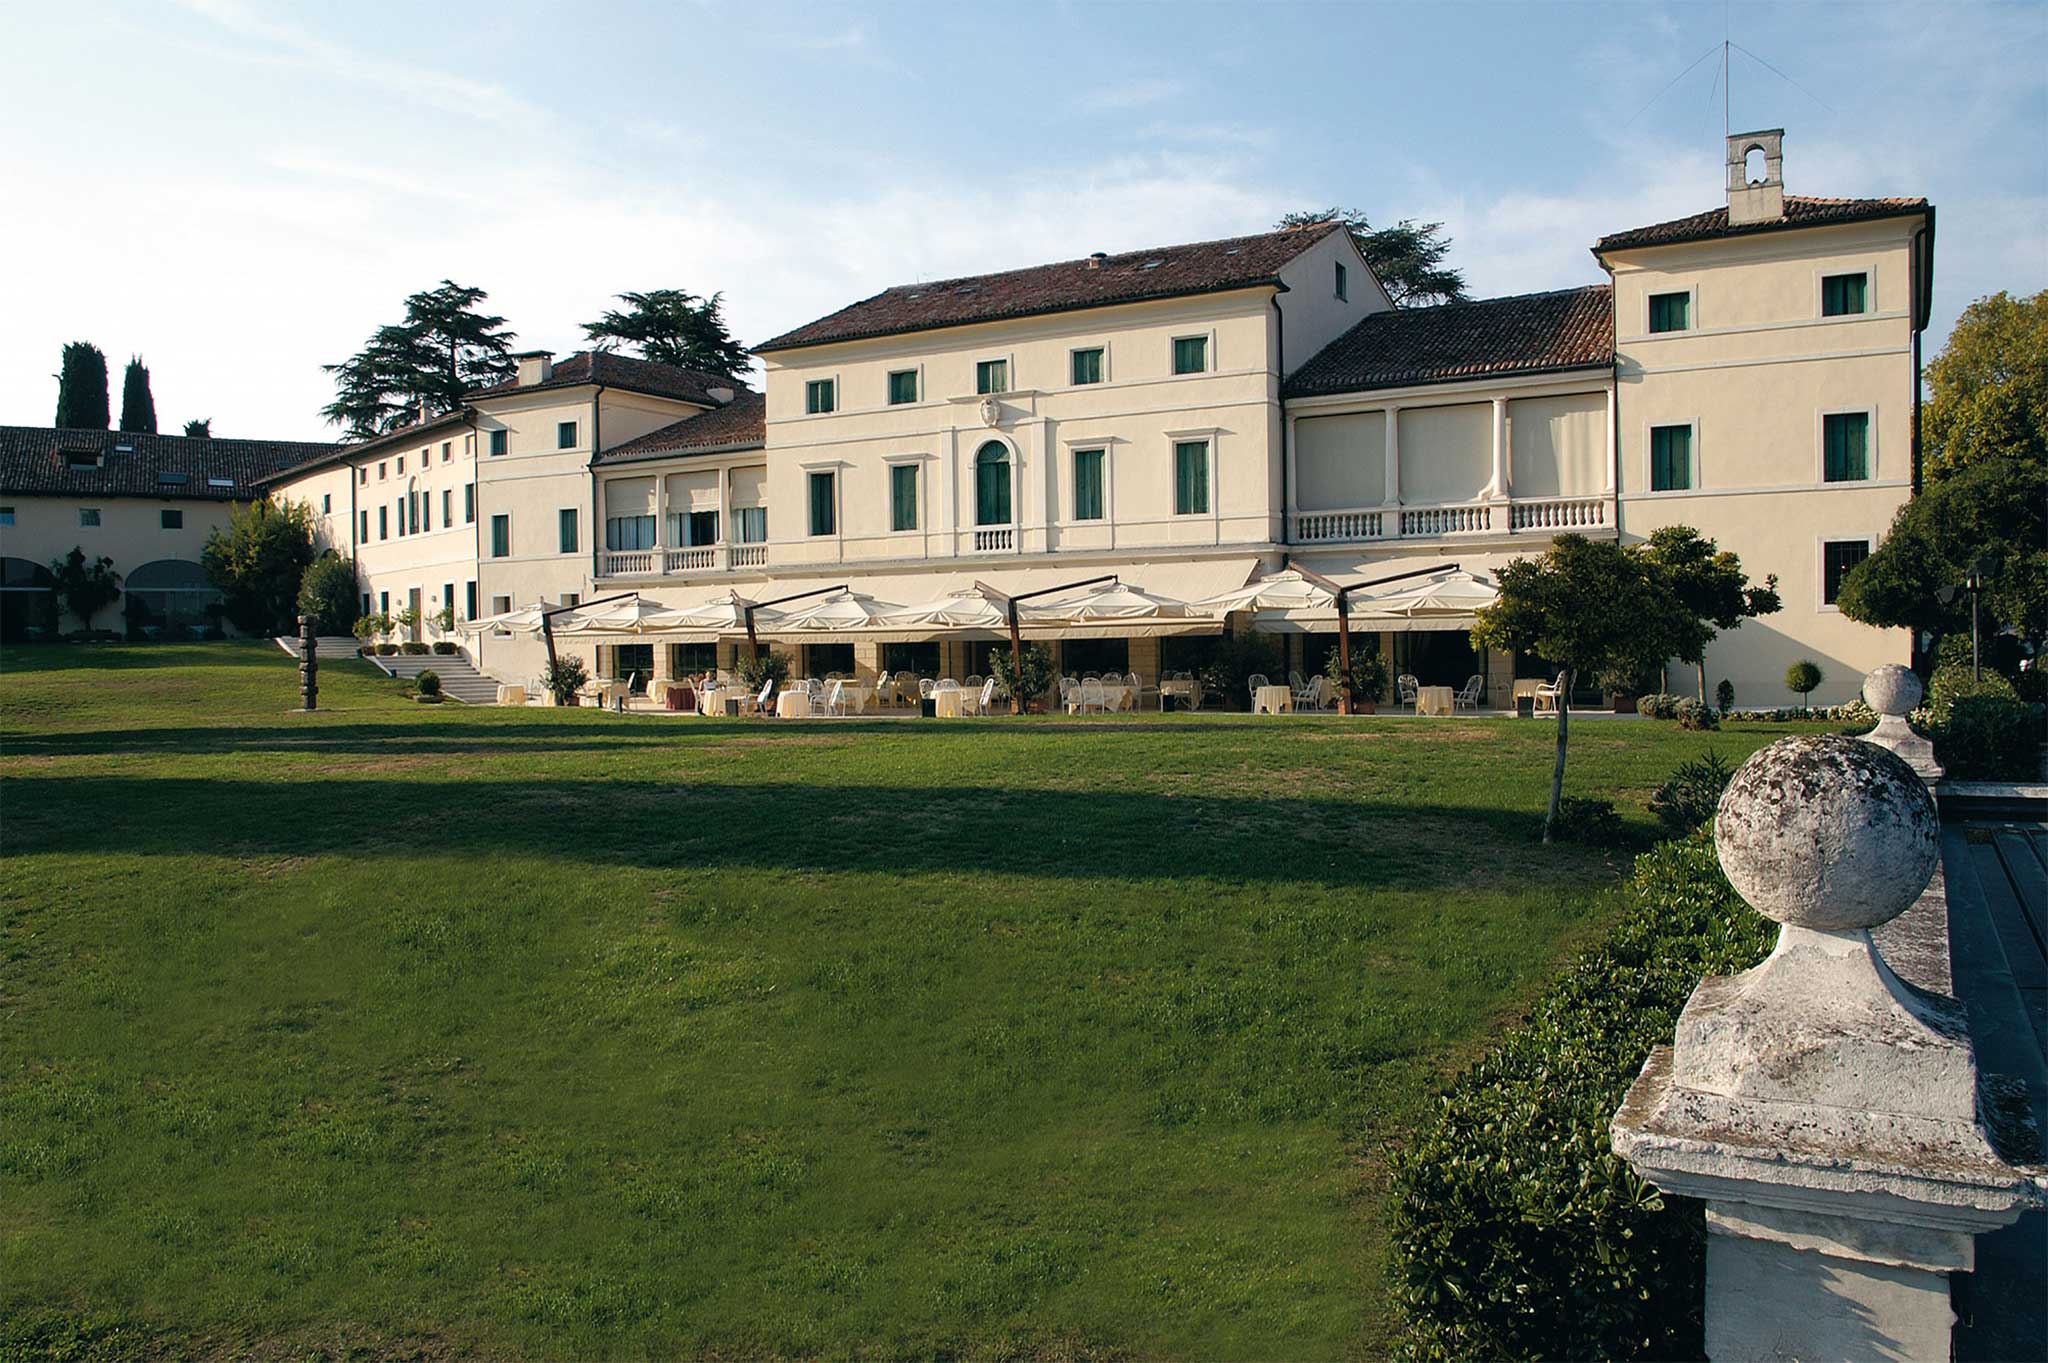 Villa Michelangelo